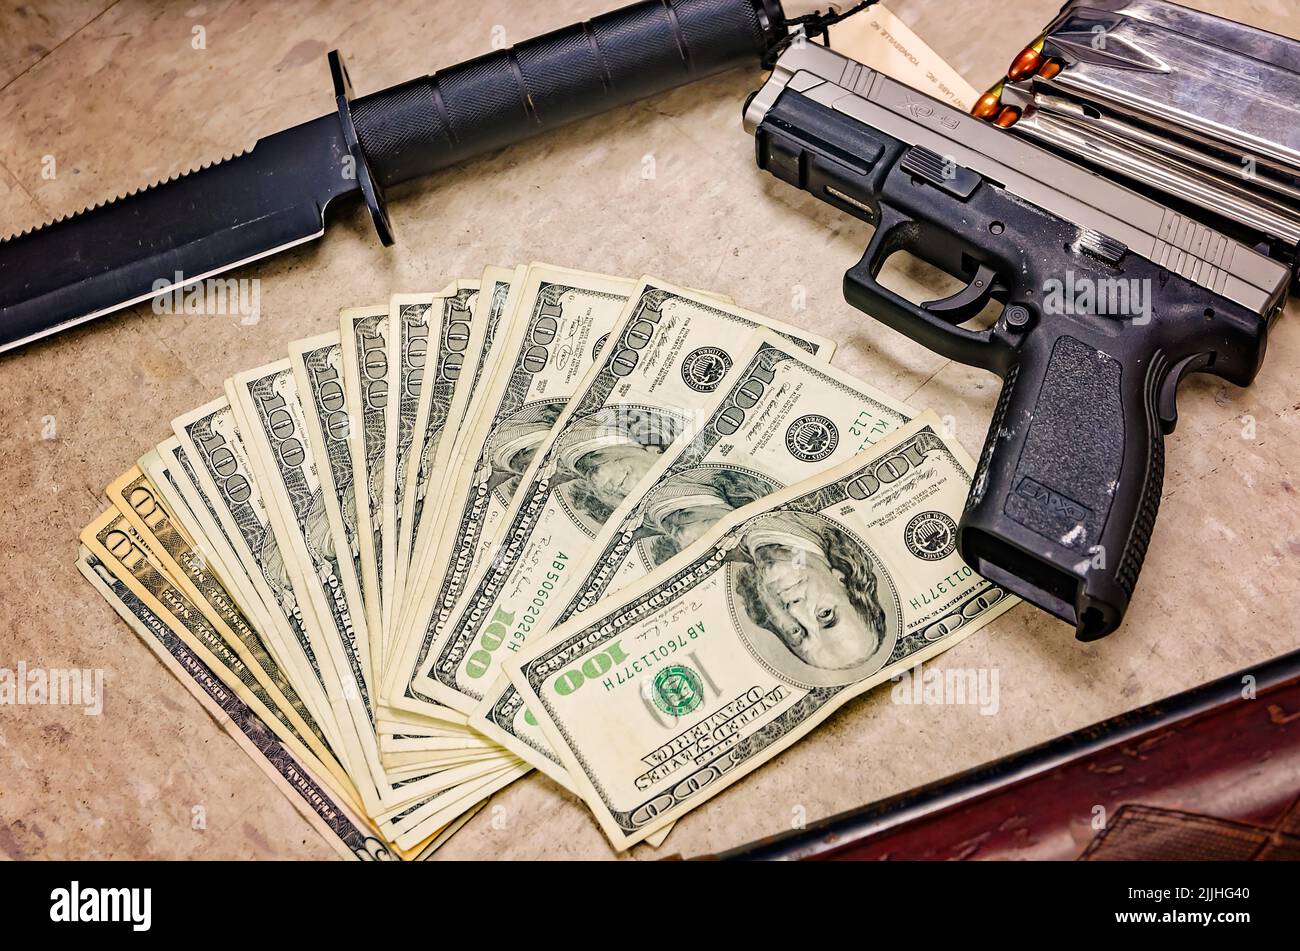 Las armas y el efectivo se exhiben en una sala de pruebas del departamento de policía después de un busto de drogas, el 3 de febrero de 2012, en Columbus, Mississippi. Foto de stock